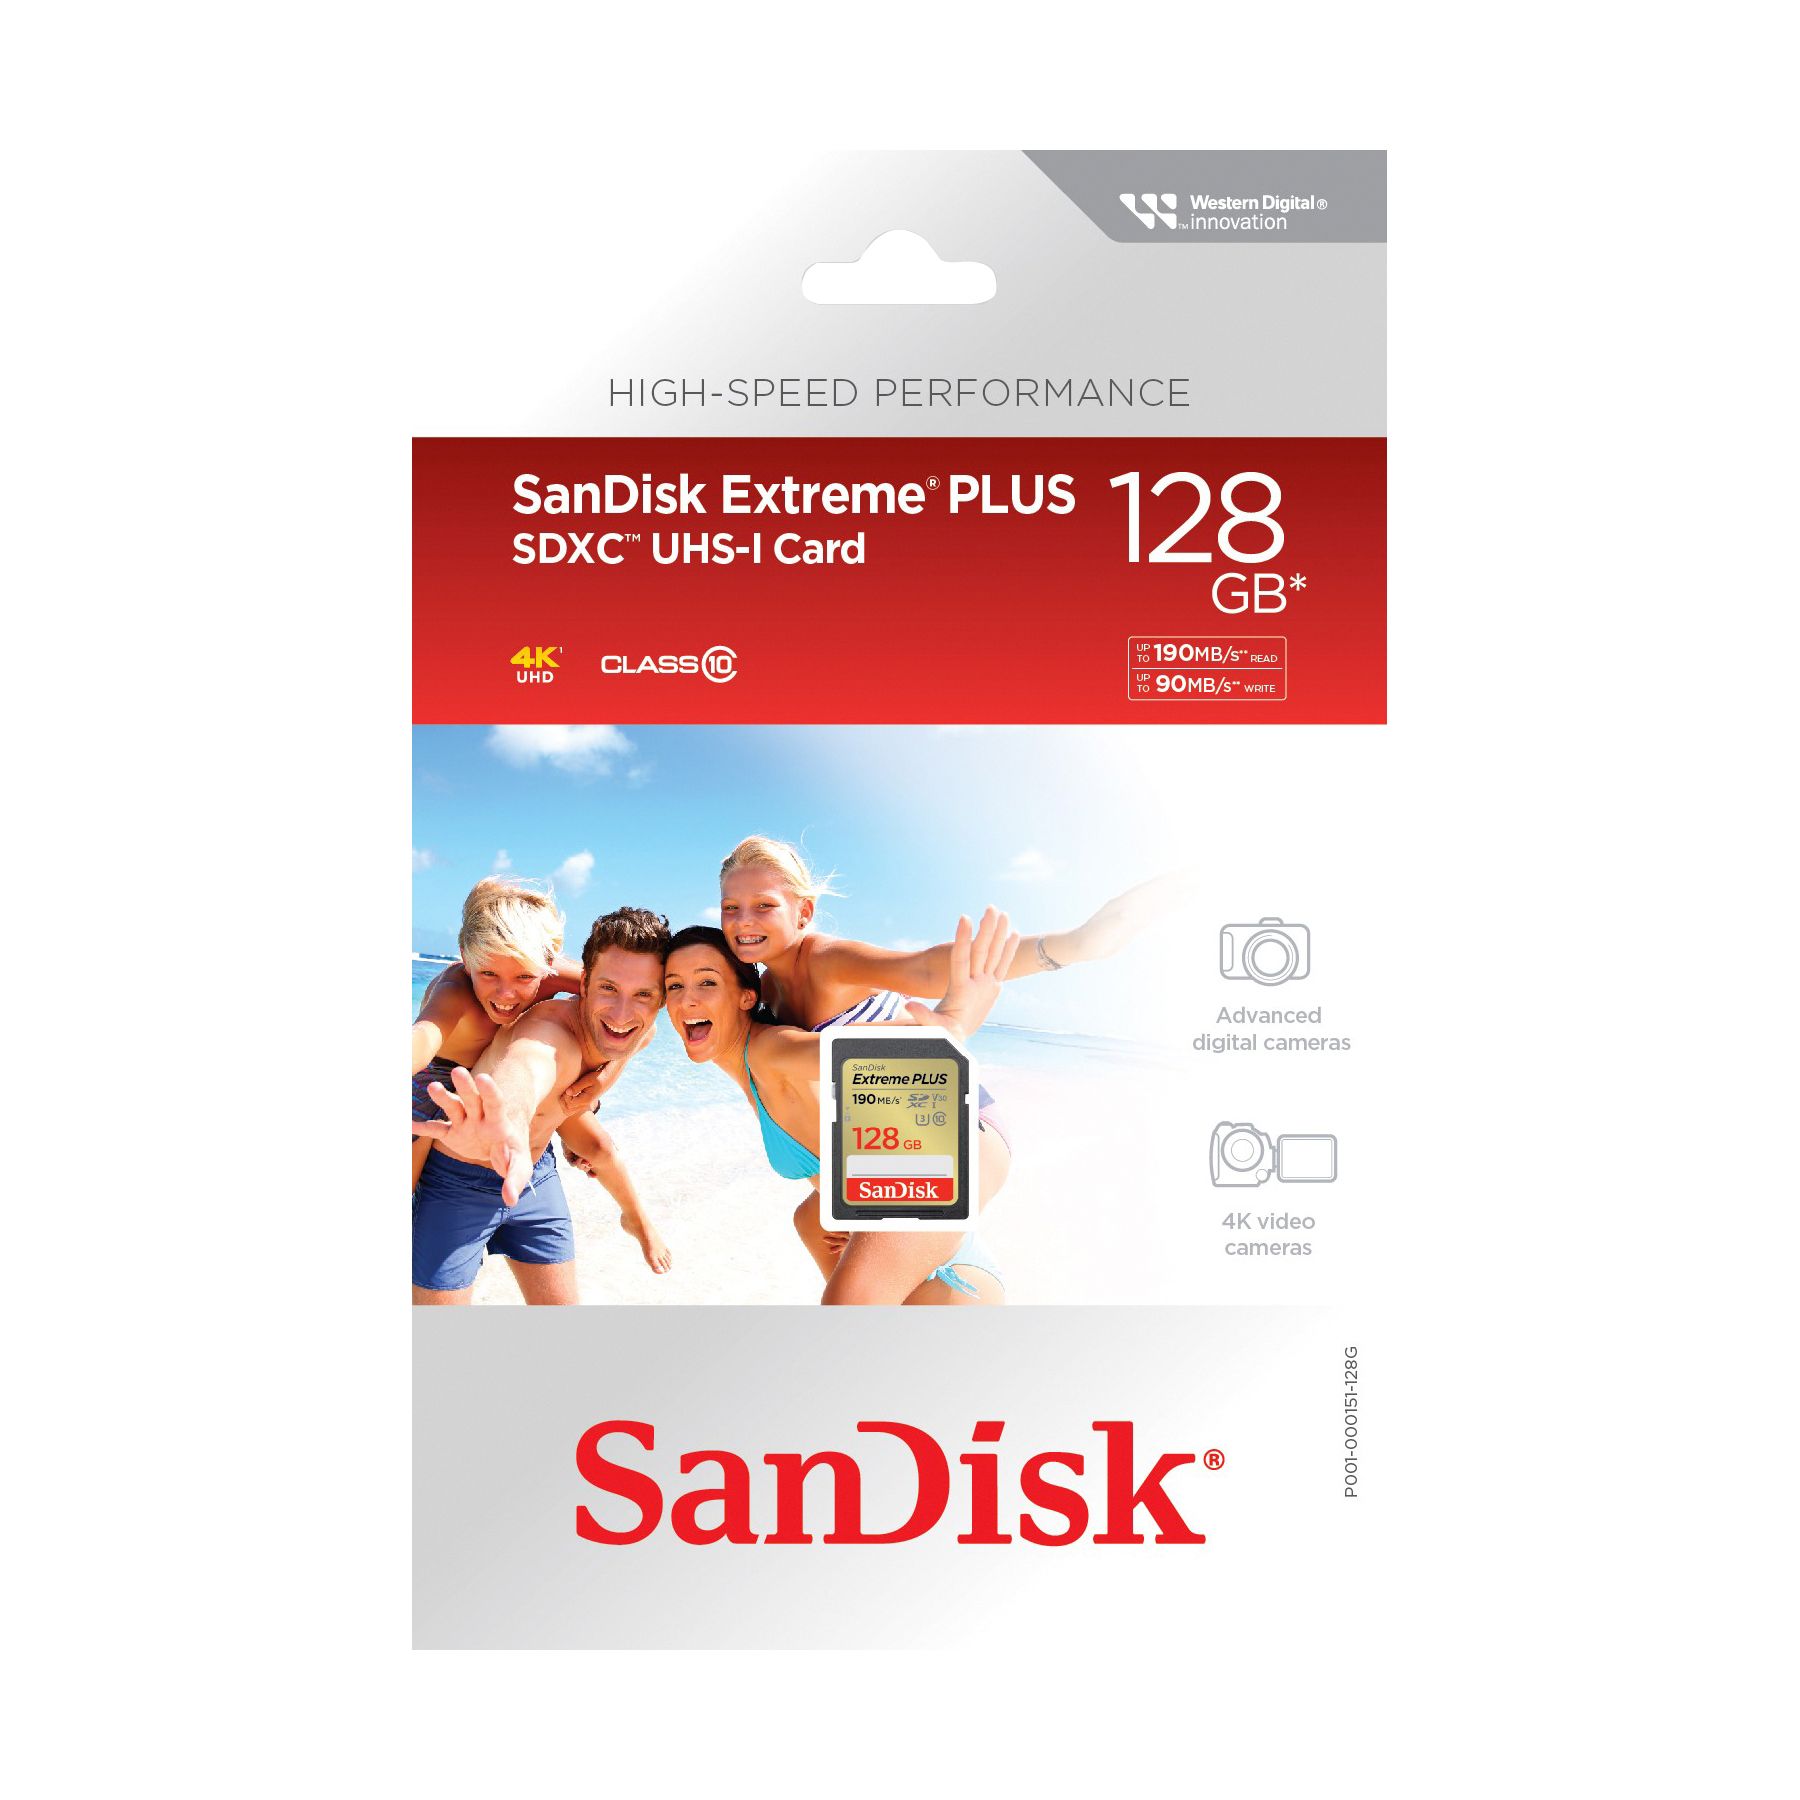 SanDisk Extreme PLUS microSDXC UHS-I card